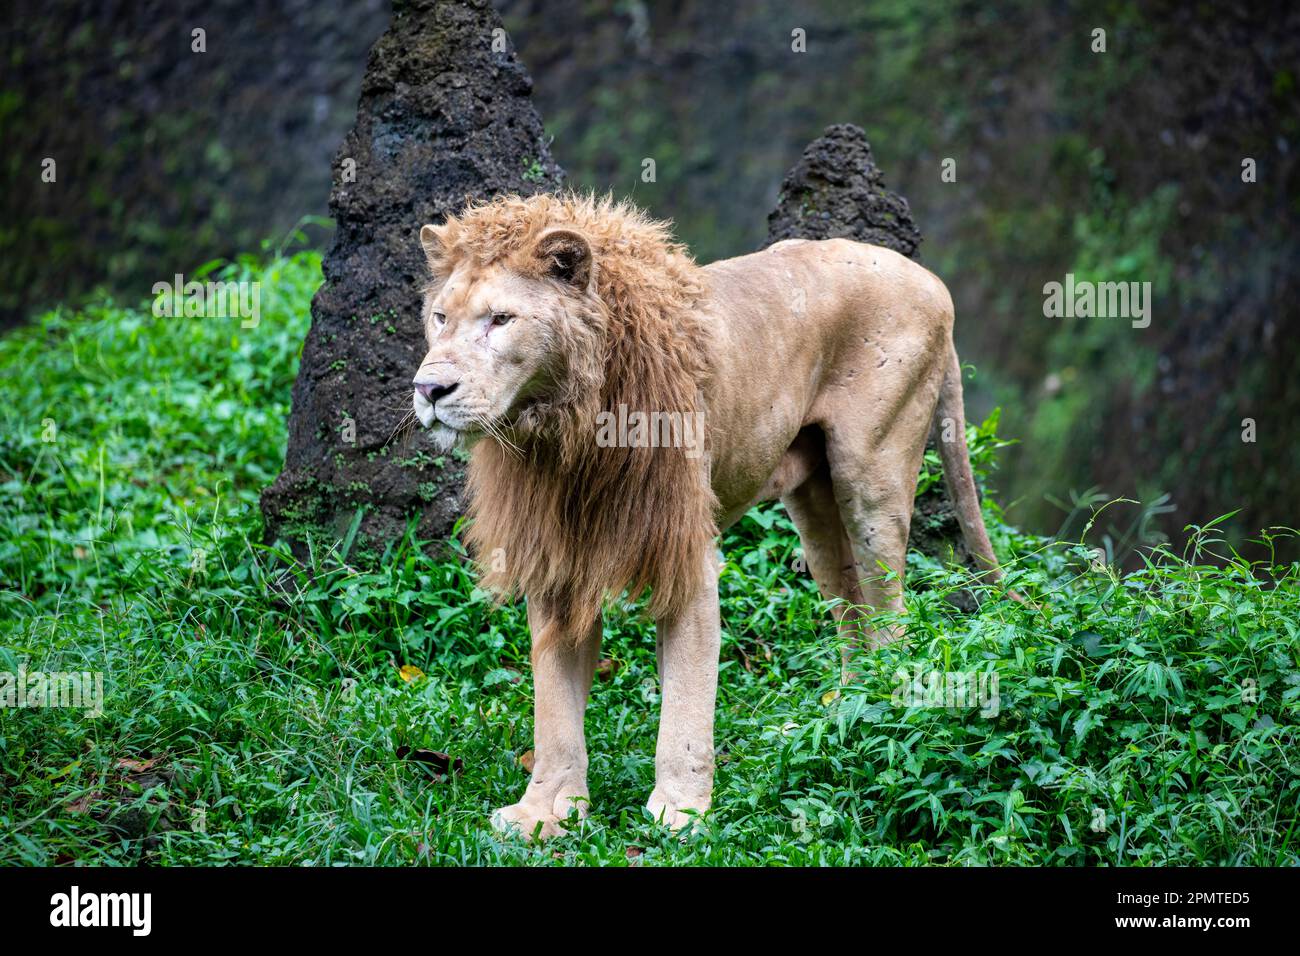 Il leone bianco è una rara mutazione di colore del leone, in particolare il leone dell'Africa australe. I leoni bianchi non sono albini. Foto Stock